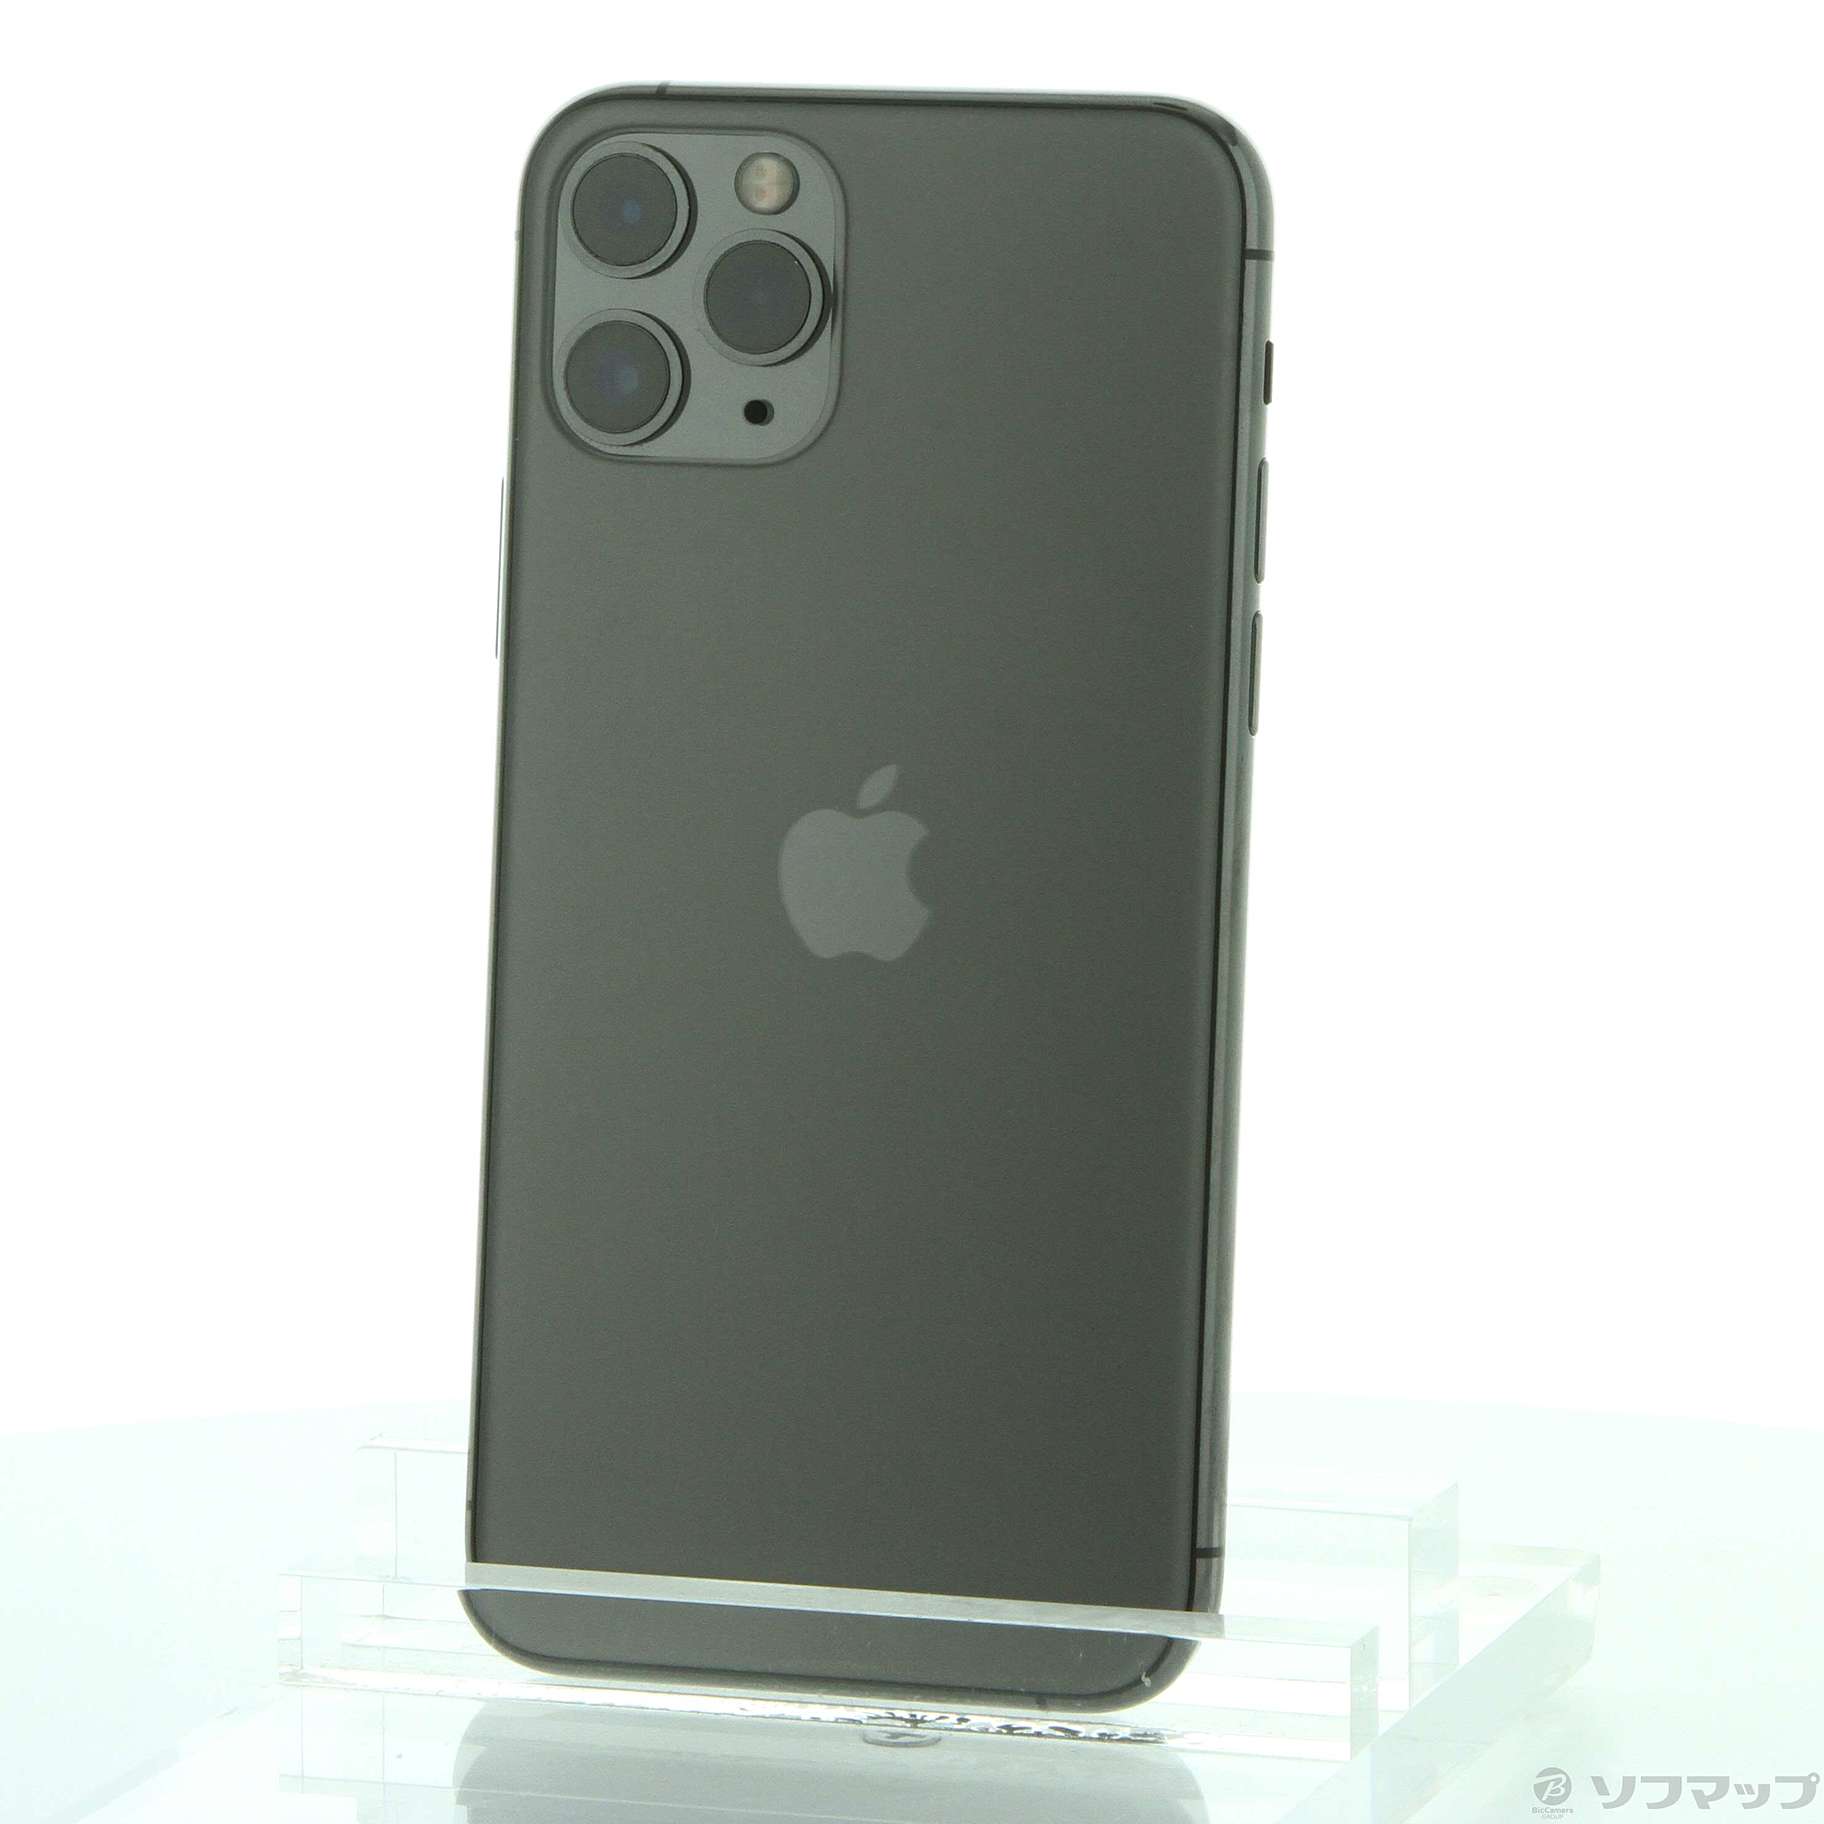 割引商品iPhone11 pro 256GB スペースグレイSIMフリー スマートフォン本体